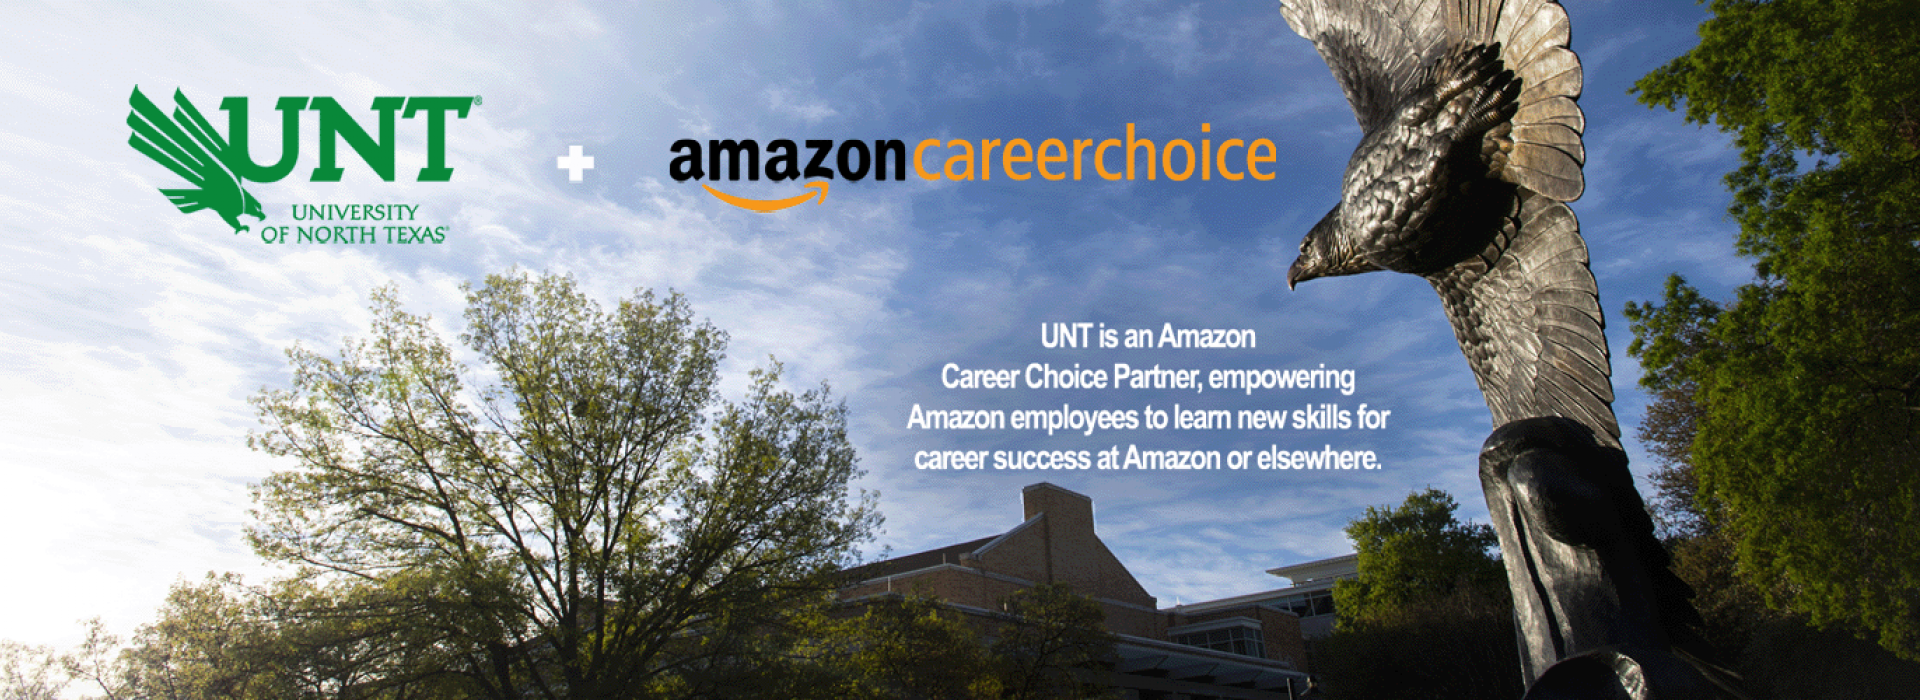 UNT Amazon Career Choice - UNT is an Amazon a career choice partner.